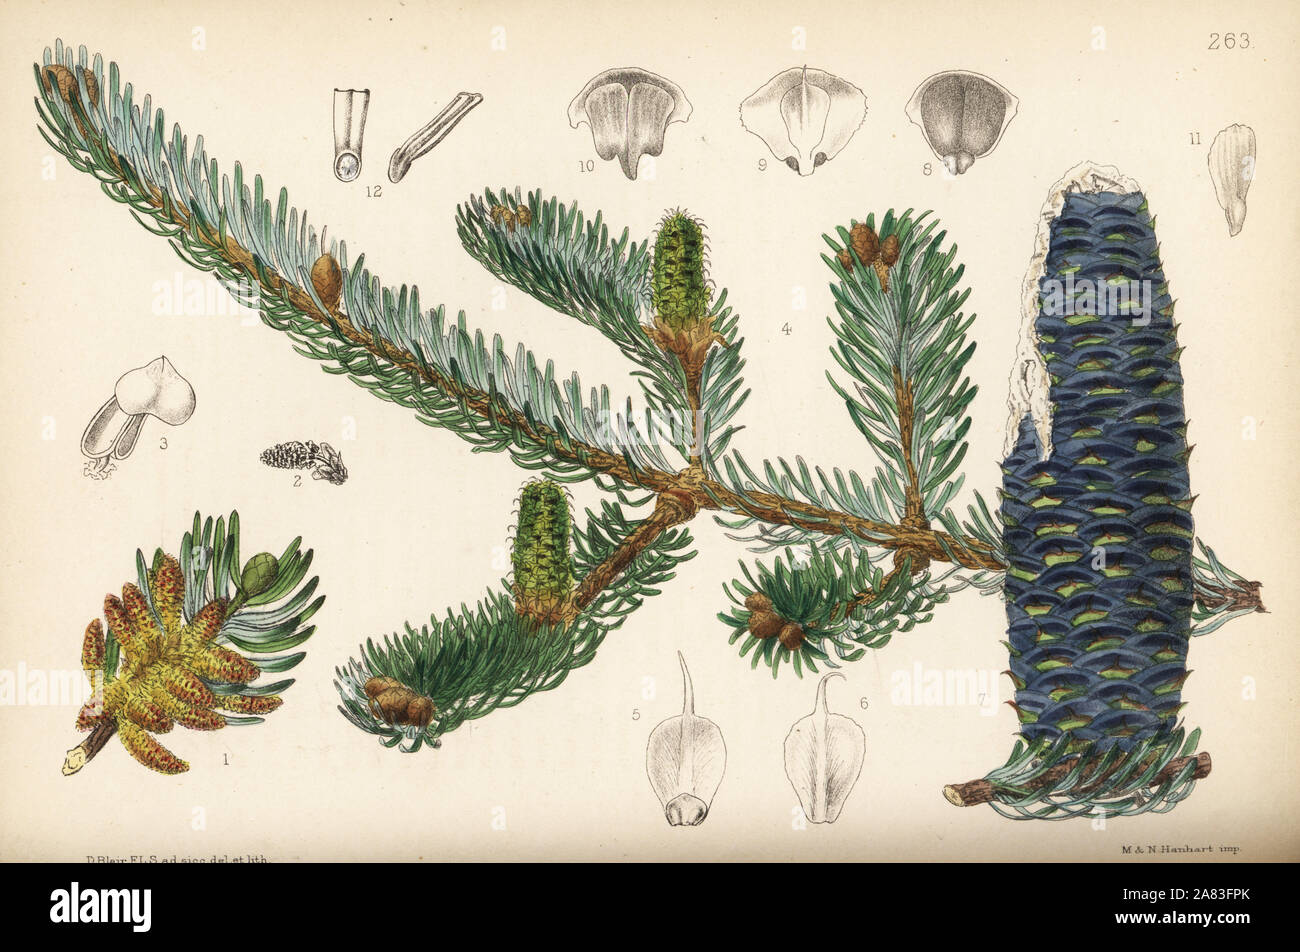 Balsam fir or balm of Gilead fir, Abies balsamea (Pinus balsamea). Handcoloured lithograph by Hanhart after a botanical illustration by David Blair from Robert Bentley and Henry Trimen's Medicinal Plants, London, 1880. Stock Photo